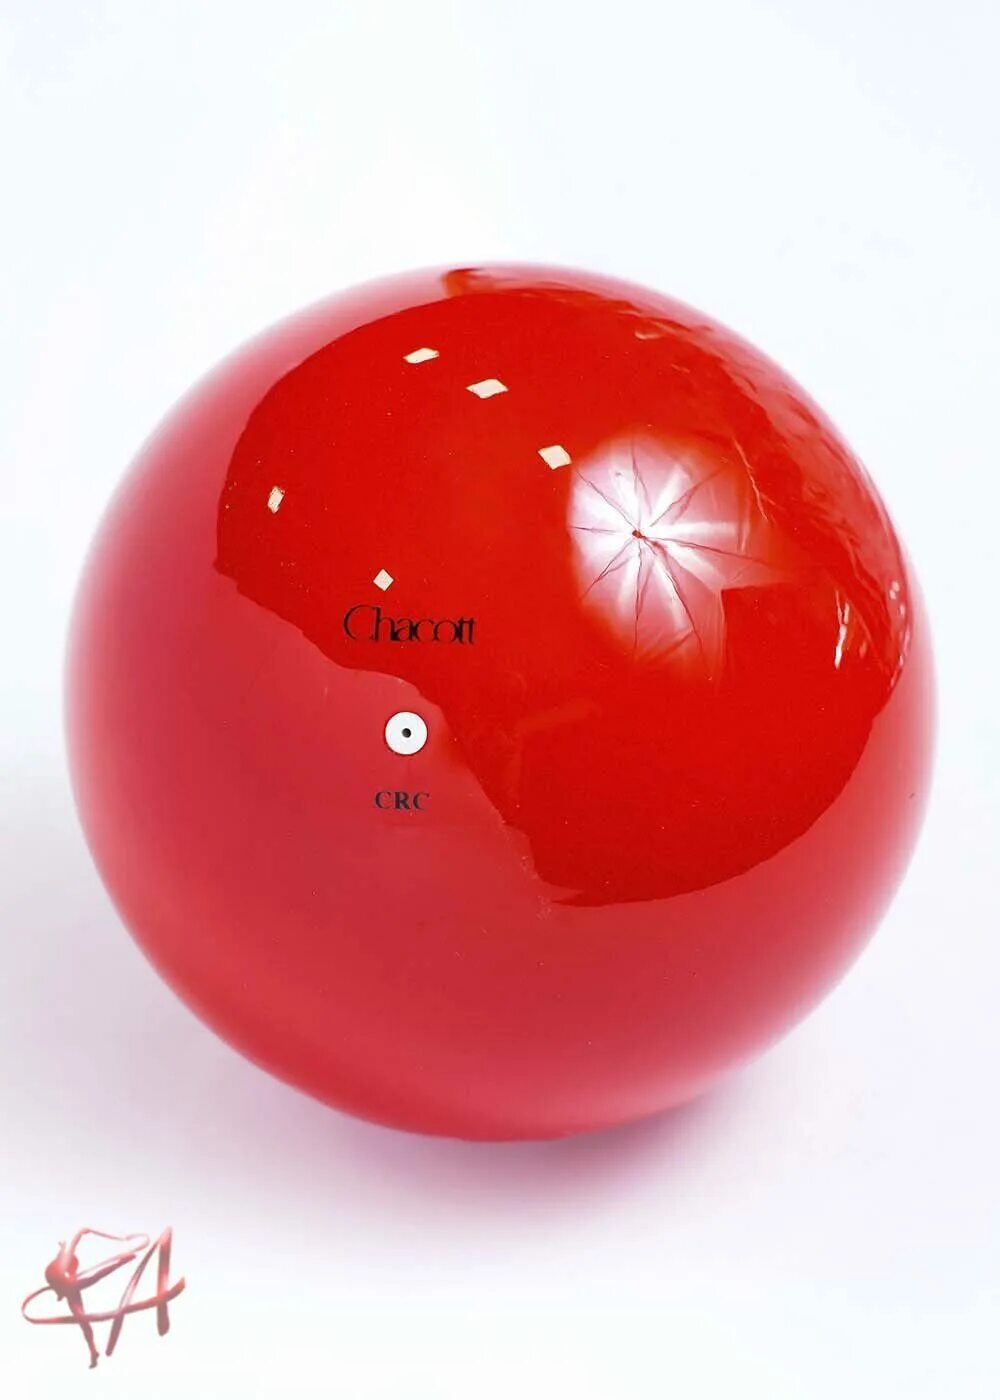 Мяч Сасаки 17 см. Мяч chacott 18.5. Мяч гимнастический Сасаки 17. Красный мяч для художественной гимнастики Сасаки. Красный мяч купить